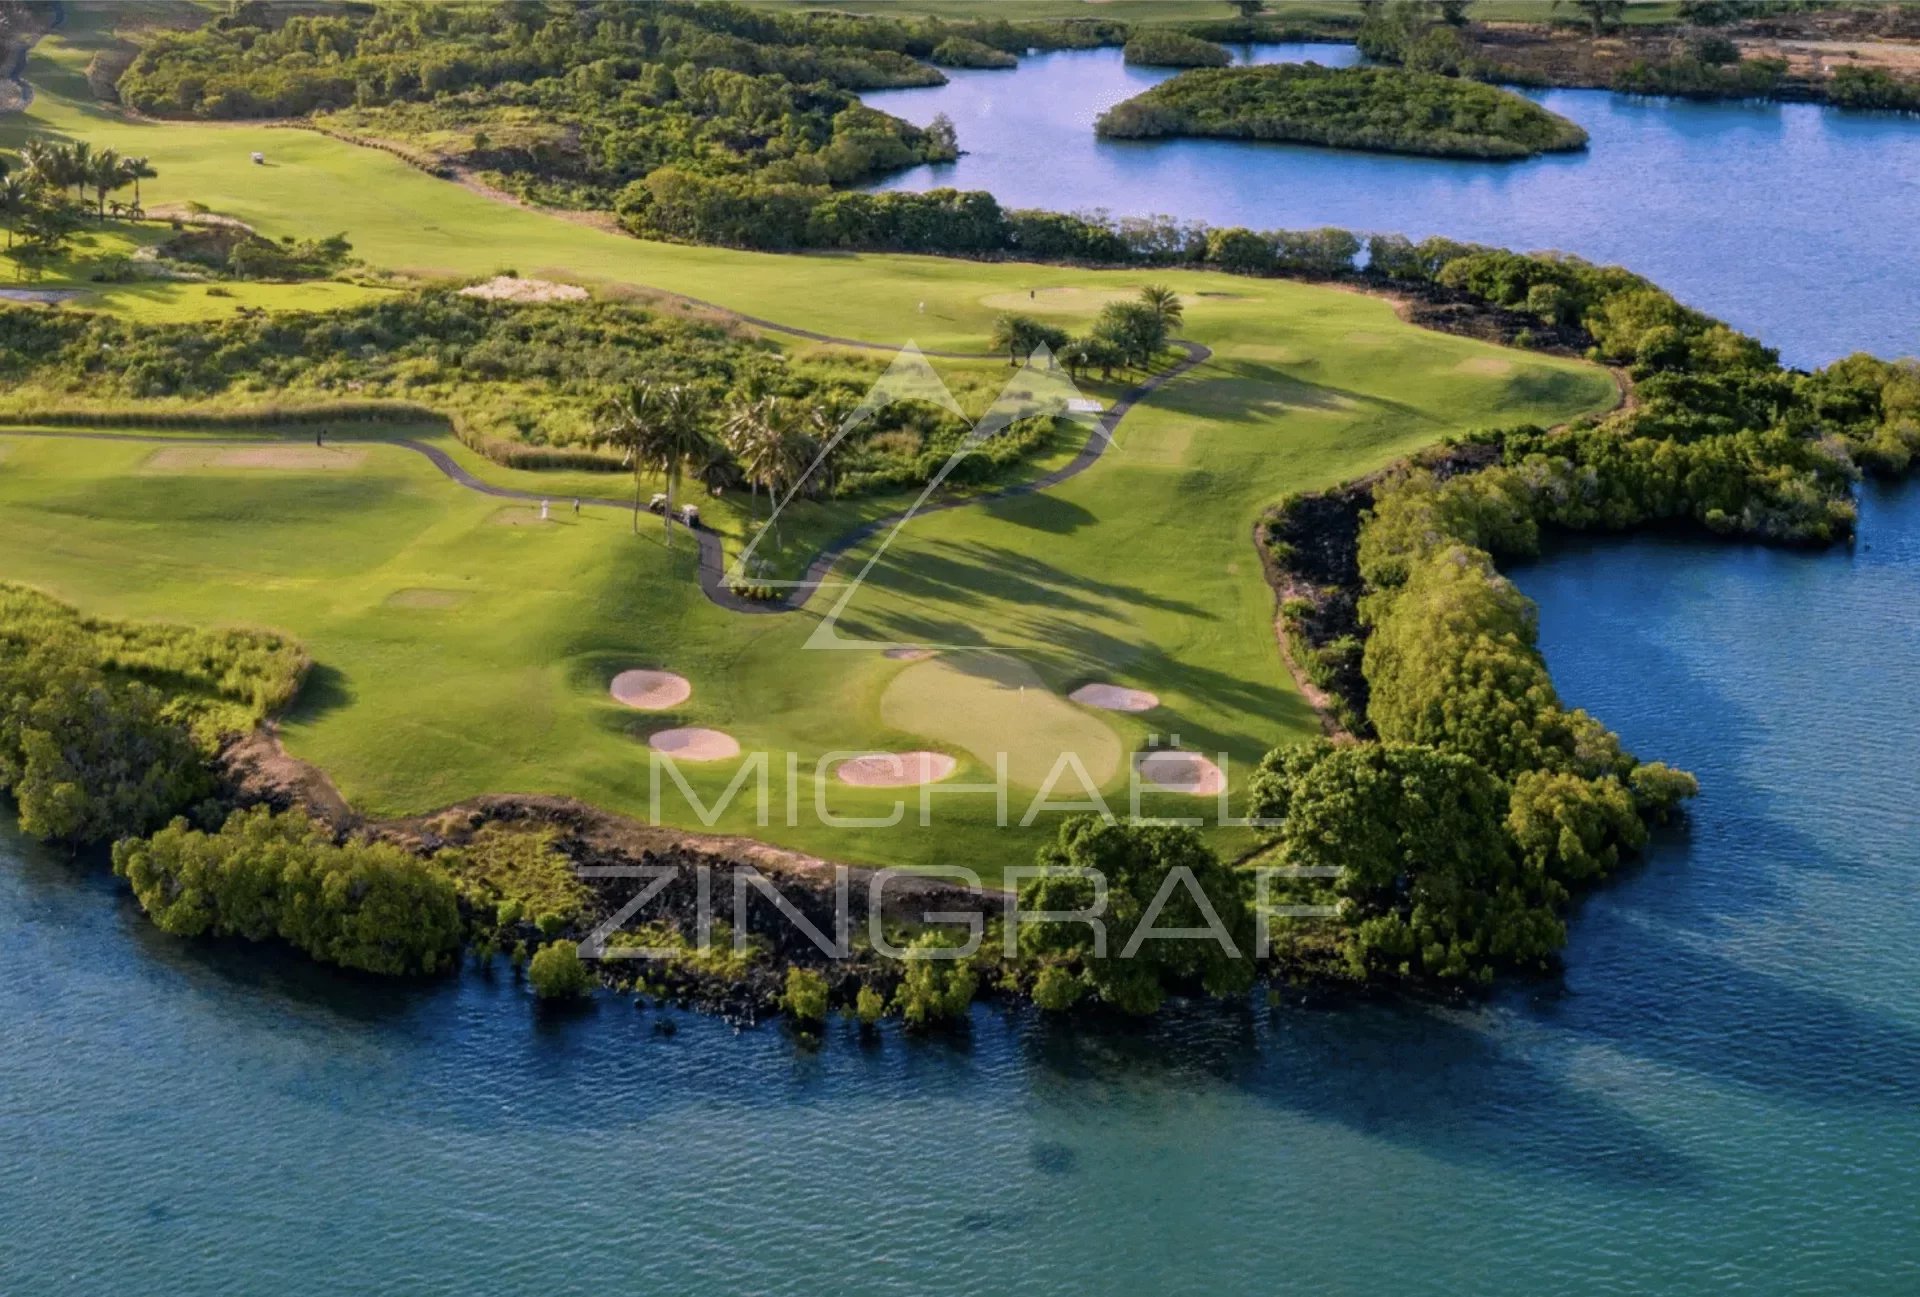 Mauritius - Fairways Villas on golf